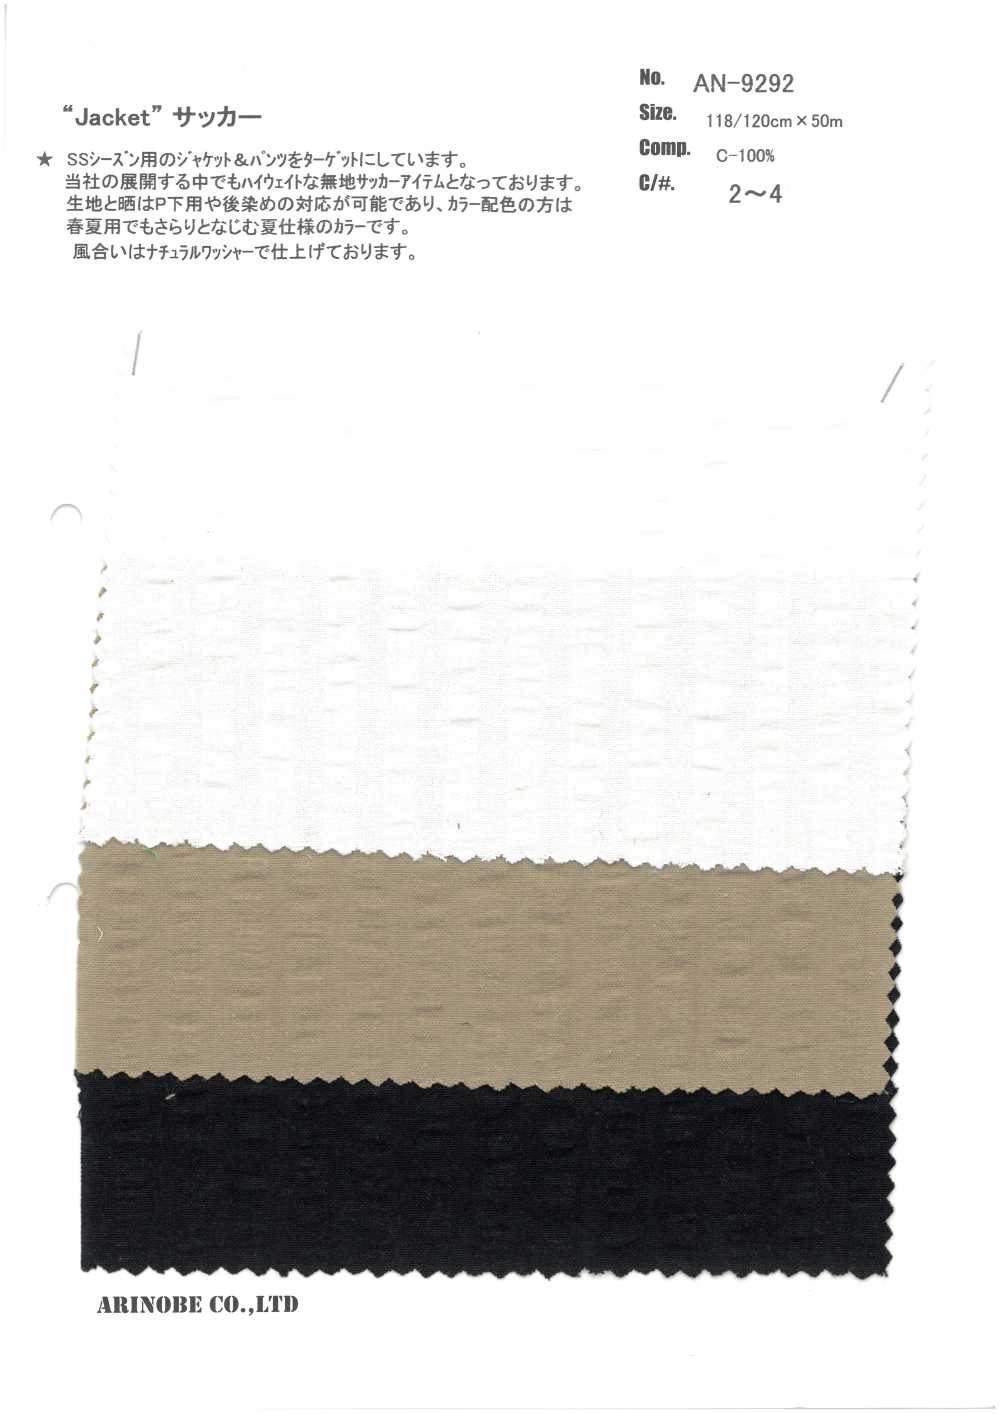 AN-9292 Seersucker Für Die Einrichtung Der Jacke[Textilgewebe] ARINOBE CO., LTD.